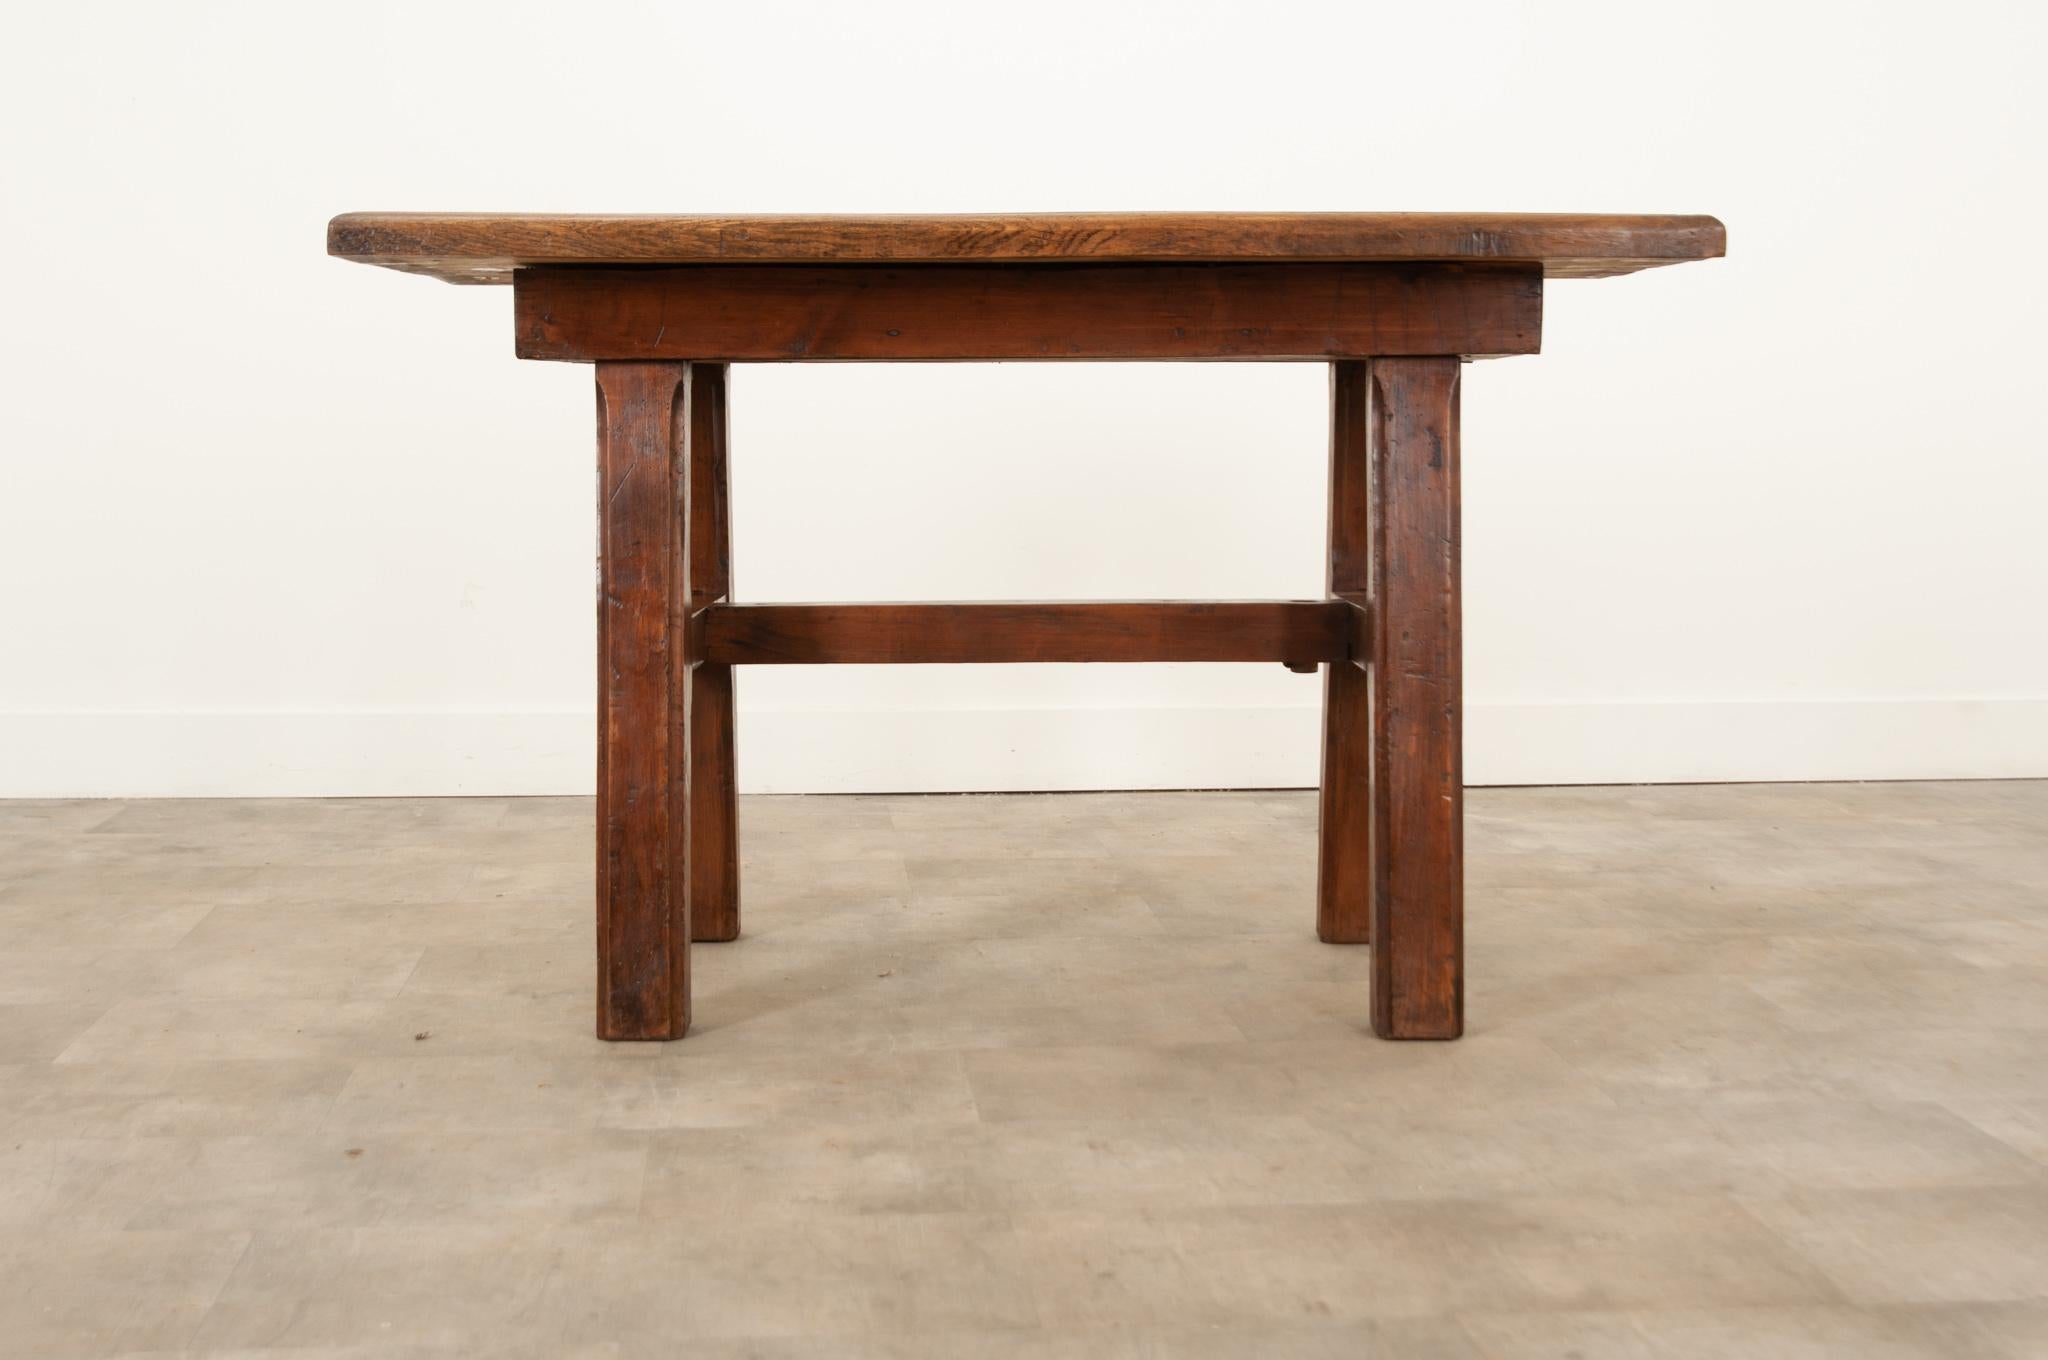 Robuste table de travail en chêne massif du XIXe siècle, fabriquée à la main en France vers 1870. Le plateau de deux pouces d'épaisseur est composé de cinq planches avec un bord mouluré et taillé qui surplombe un tablier simple soutenu par d'épais